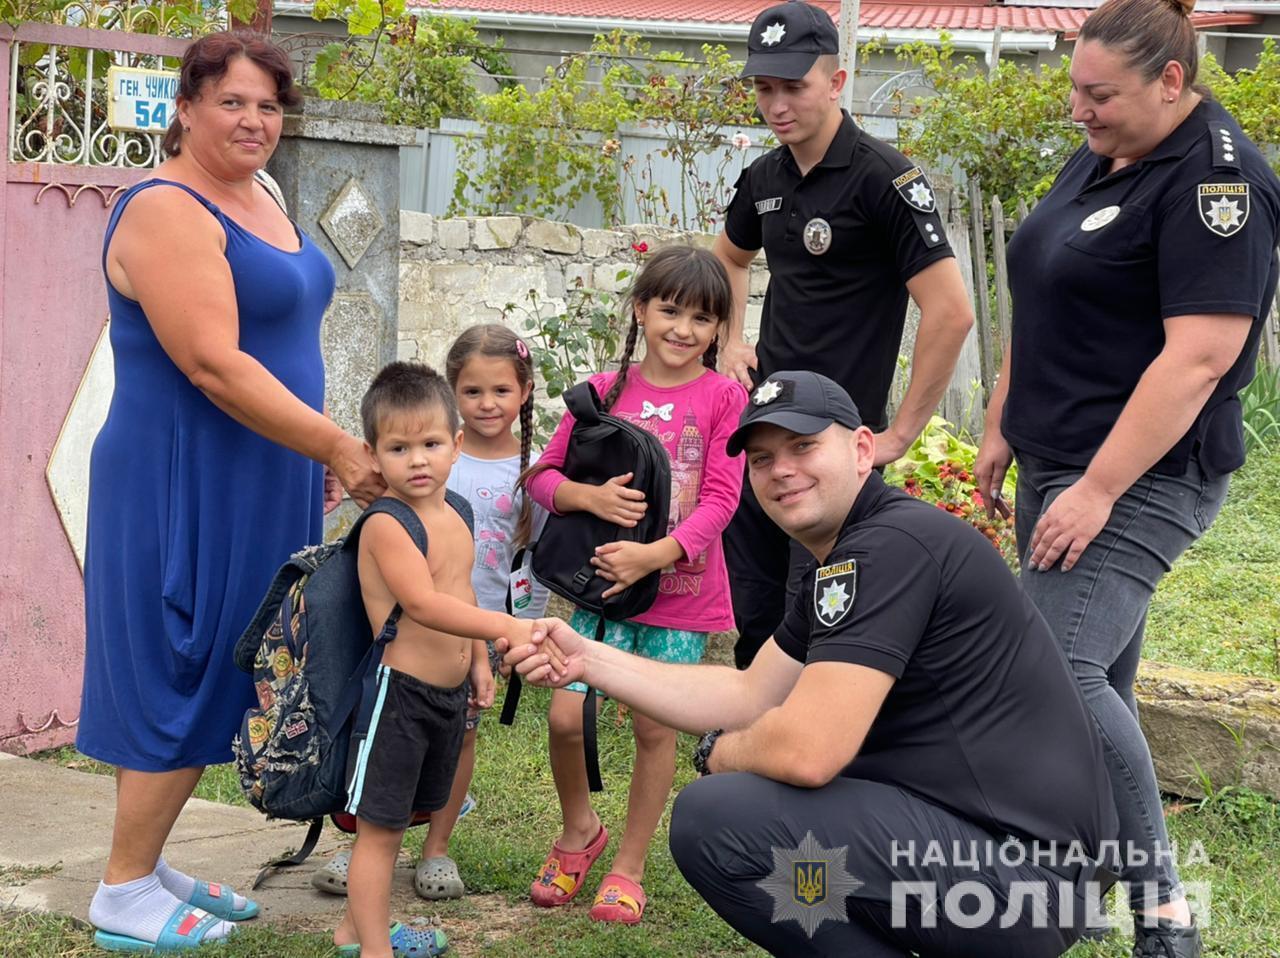 Поліцейські Одещини допомагають родинам зі складними життєвими обставинами зібрати дітей до школи